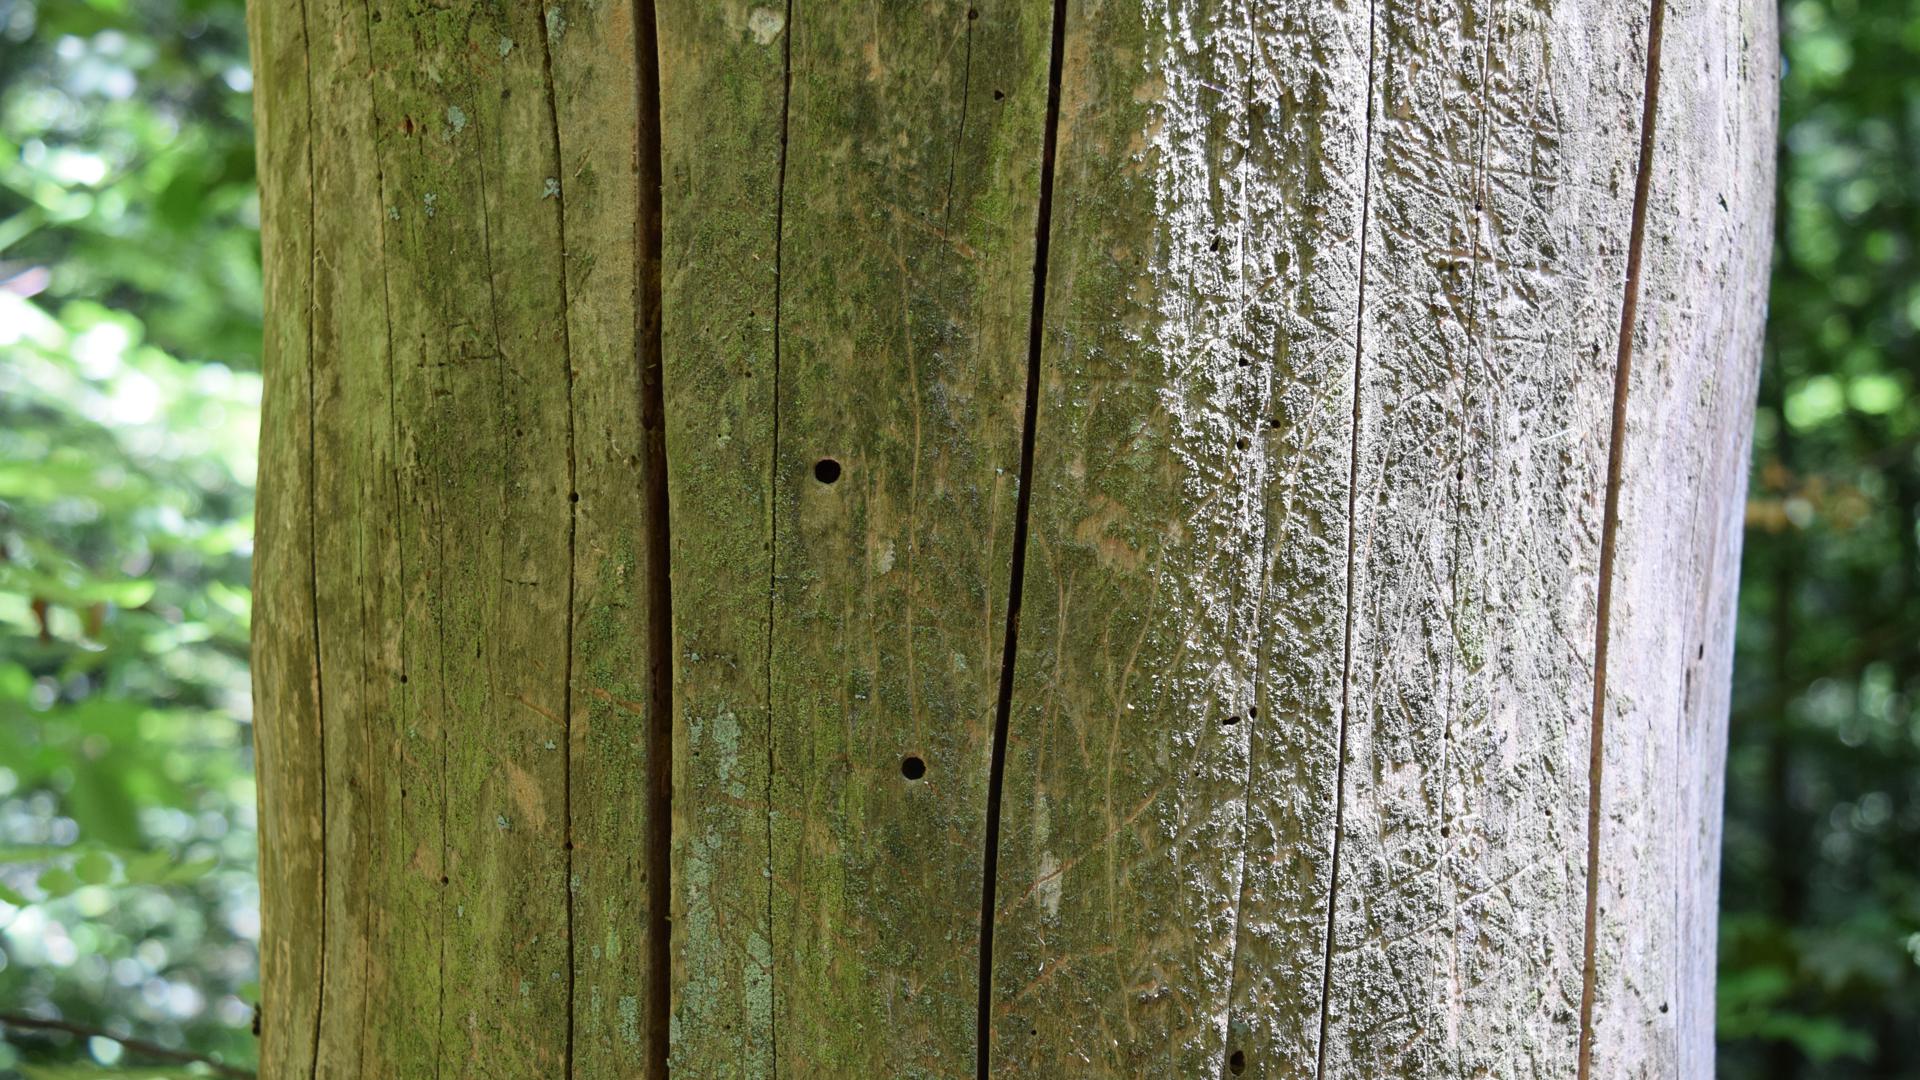 Totholz mit Käferbohrlöchern, die vermutlich von Wildbienen genutzt werden